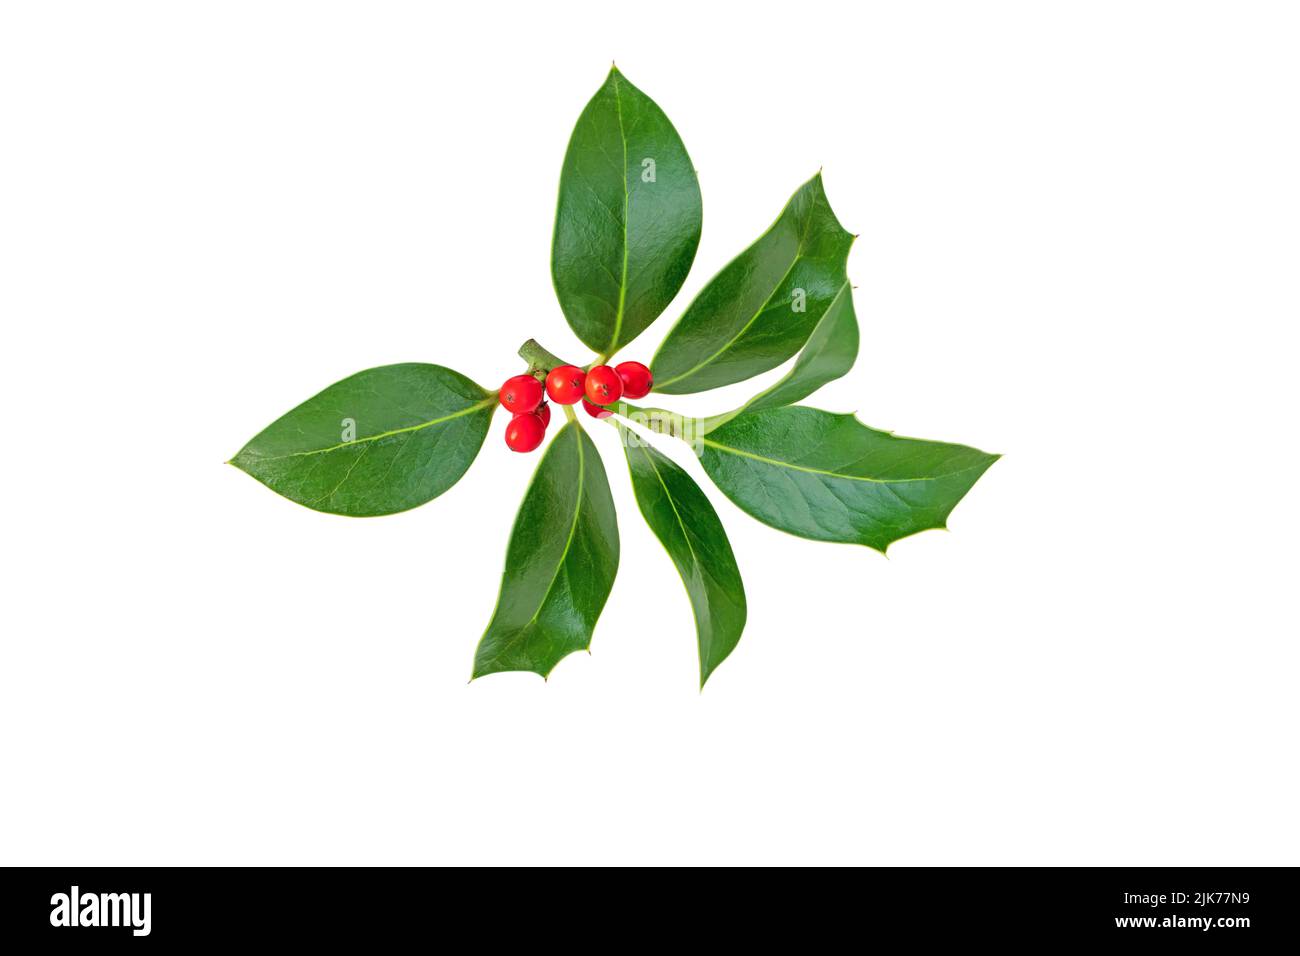 Branca di Natale. Pianta decorativa di Natale con foglie verdi lucide e bacche rosse isolate su bianco Foto Stock